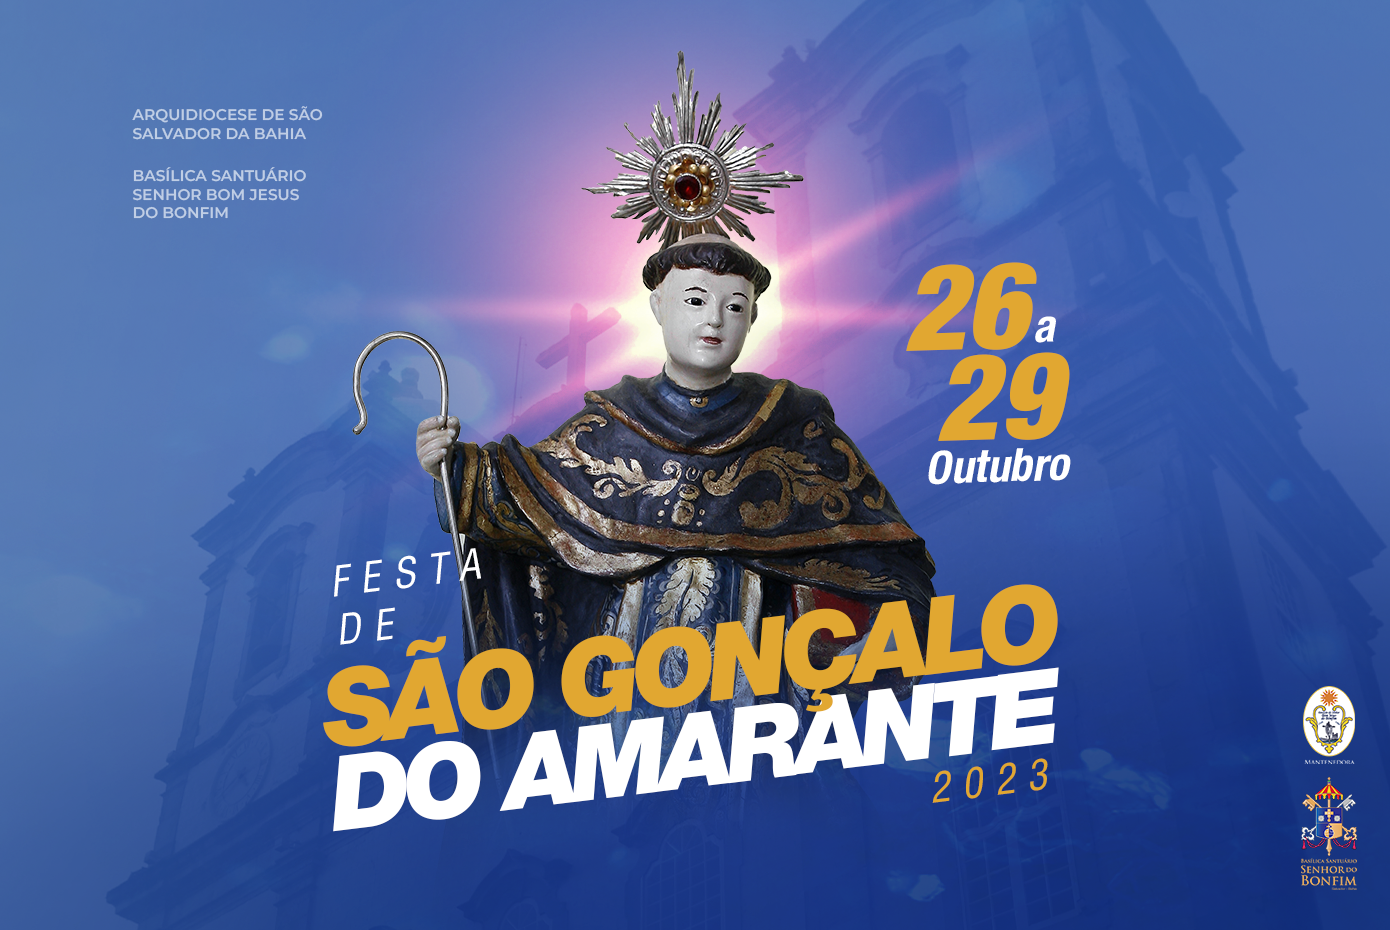 Ciclo de festividades da Colina Sagrada tem início hoje (26) com tríduo em honra a São Gonçalo